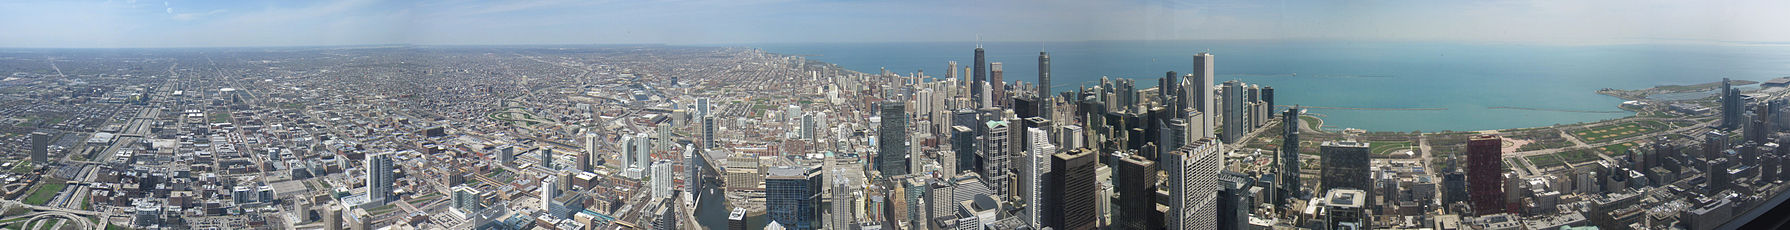 Blick auf die Metropolregion Chicago und die dichte Innenstadt vom Willis Tower